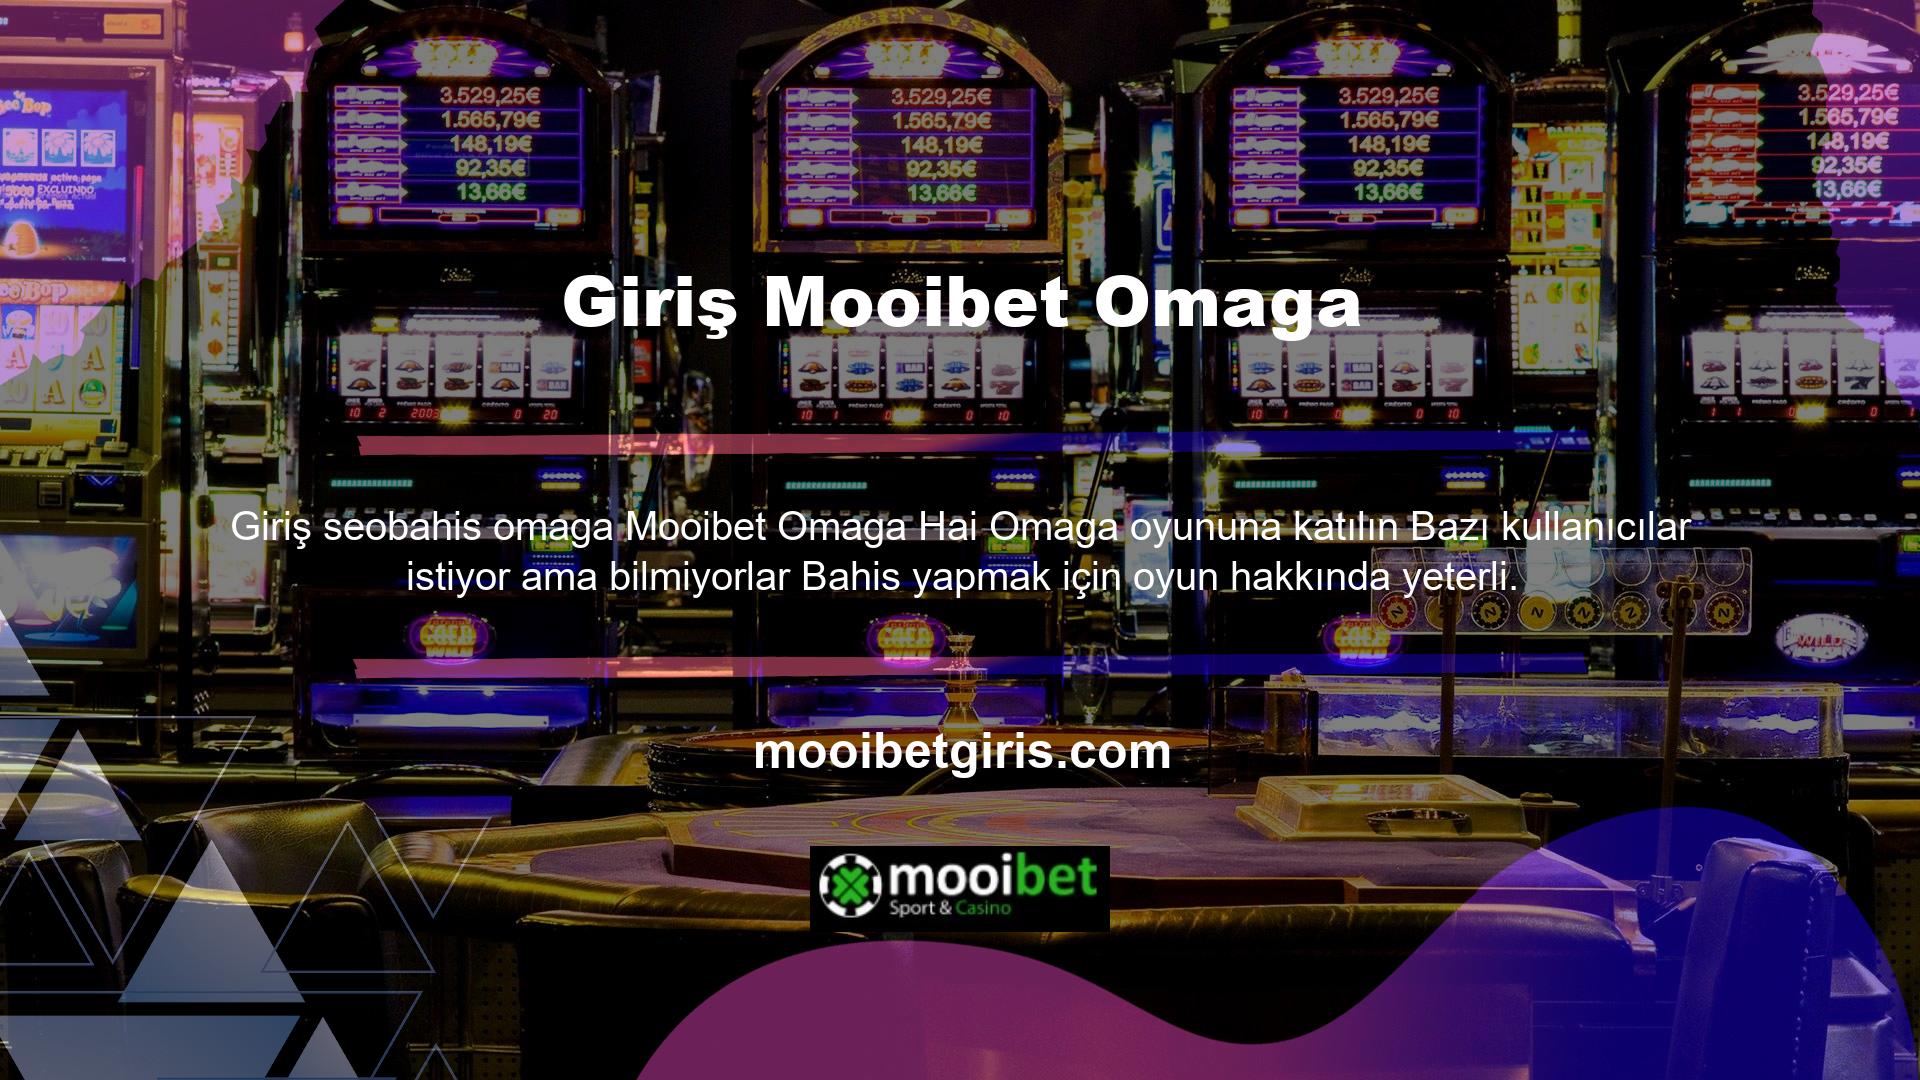 Mooibet, bu oyunculara Omaga High ve casino kategorisindeki diğer oyunlar için ücretsiz destek sunmaktadır